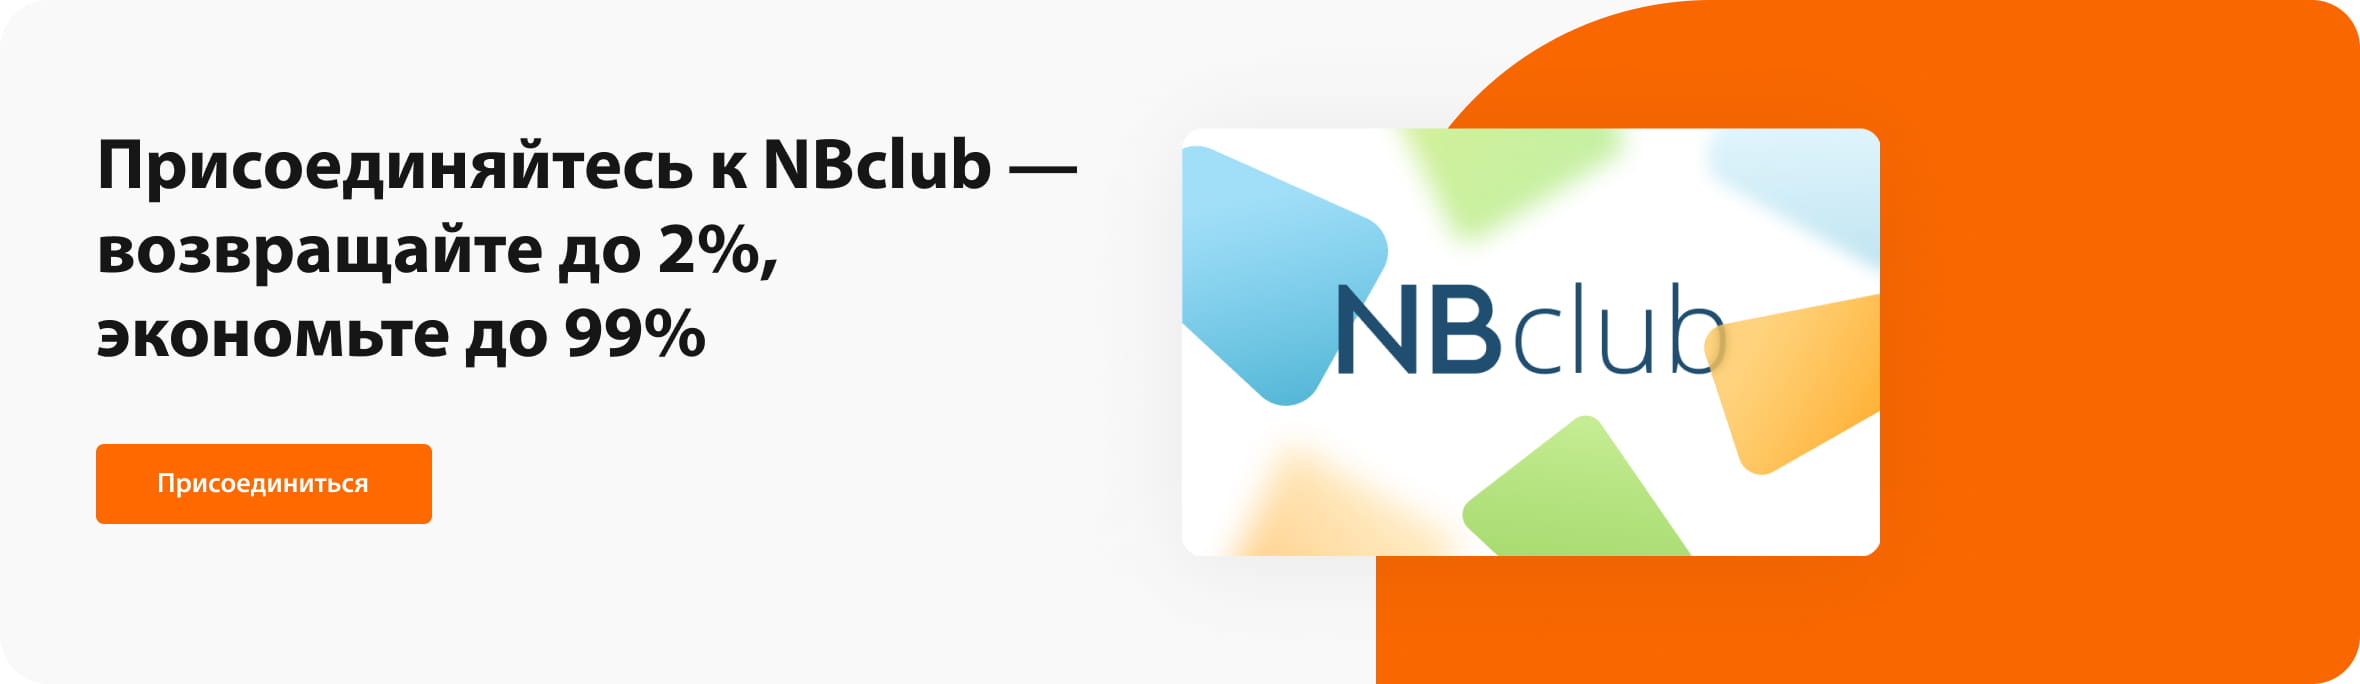 Присоединяйтесь к NBclub — возвращайте до 2%, экономьте до 99%